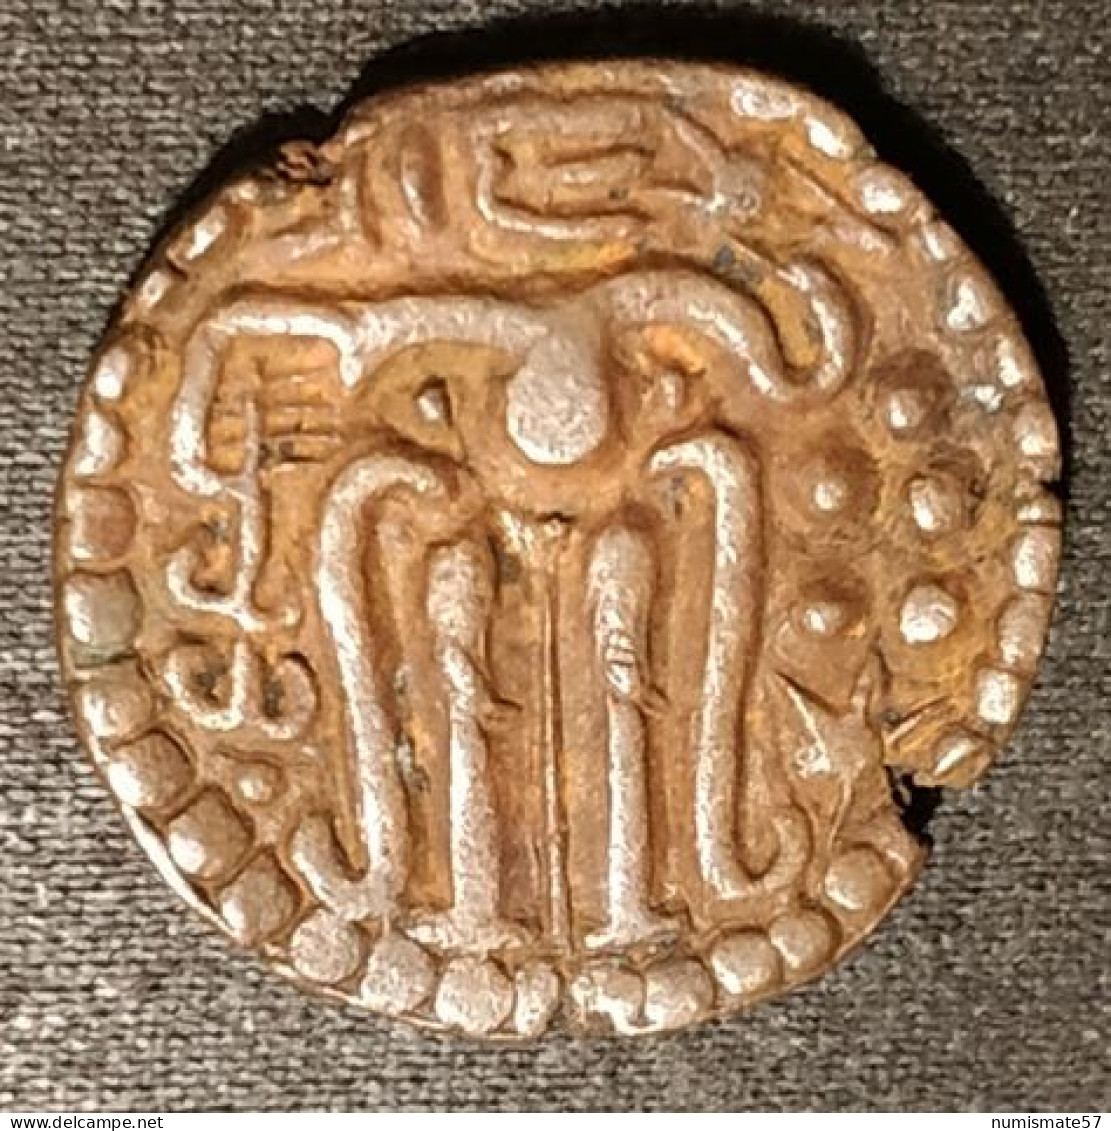 SRI LANKA - CEYLAN - CEYLON - 1 MASSA 1236 - 1271 - Parakramabahu II - Sri Lanka